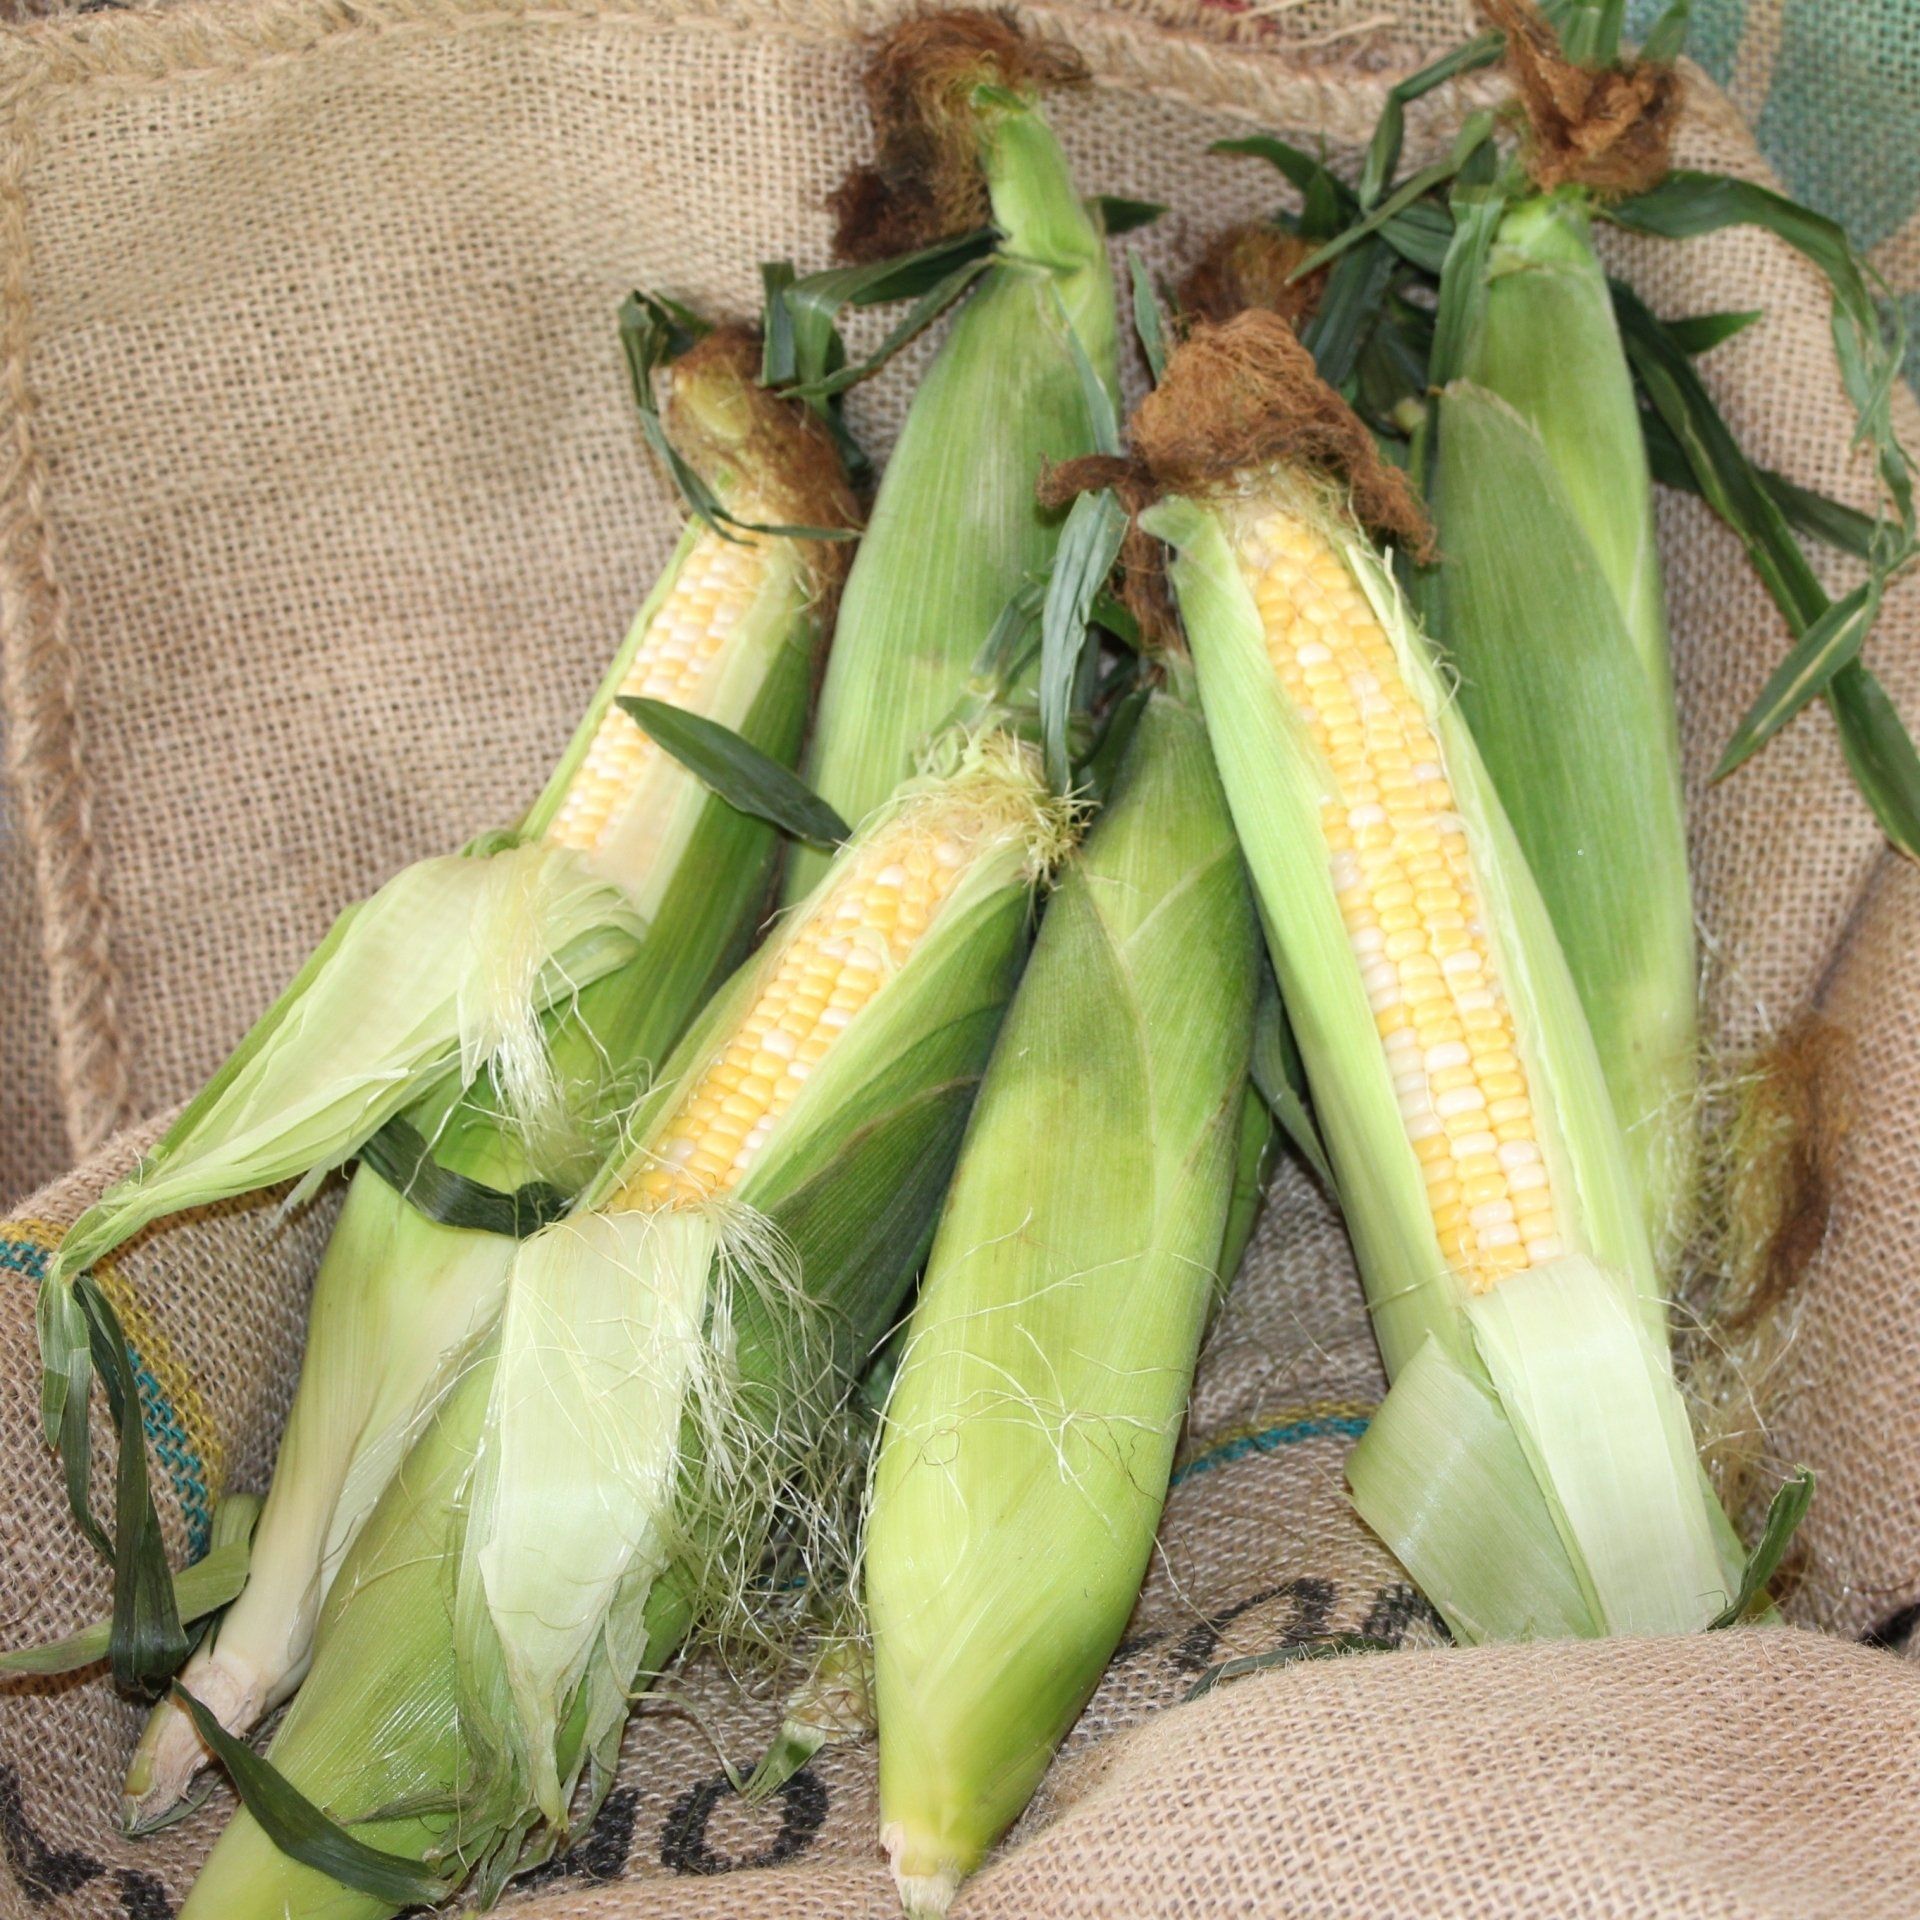 locally grown sweet corn